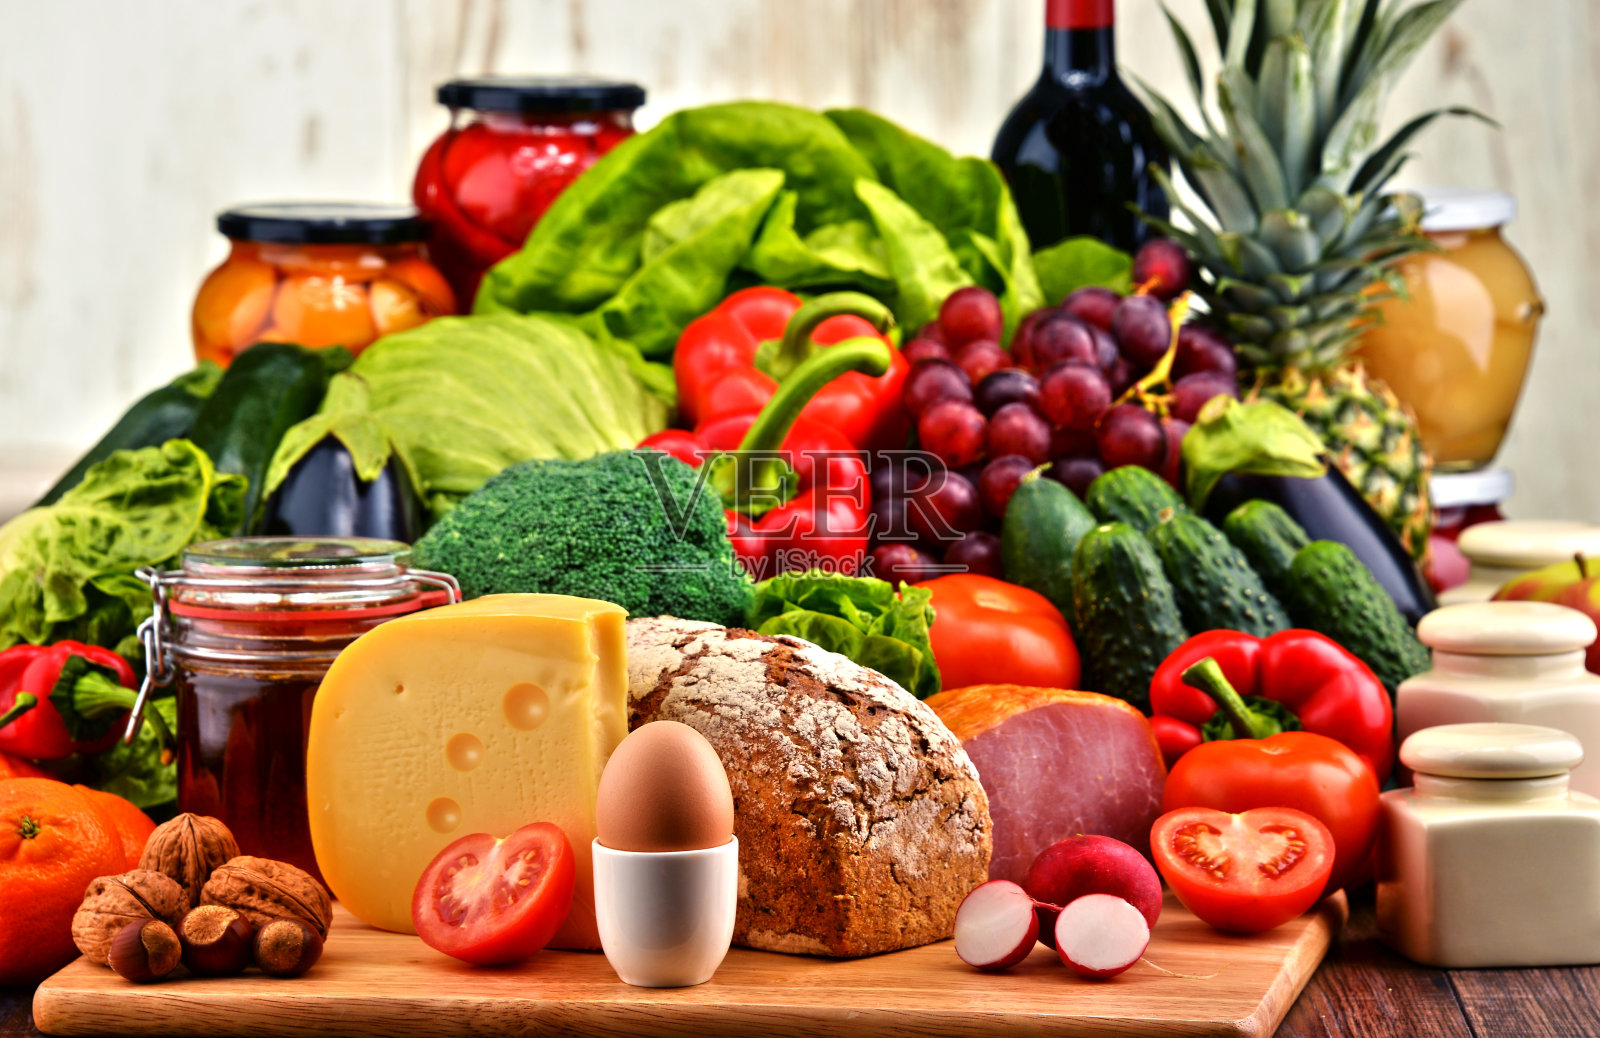 有机食品包括蔬菜、水果、面包、乳制品和肉类照片摄影